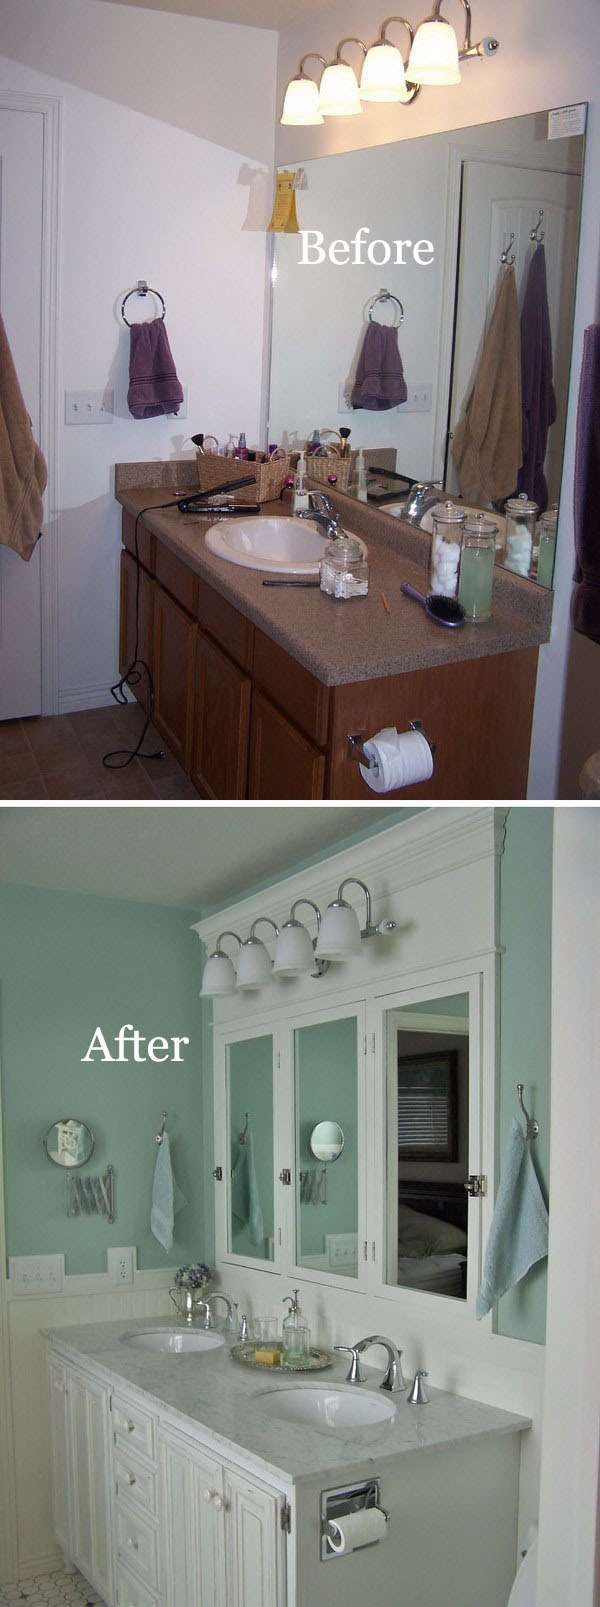 16 идей преображения старой ванной комнаты 17 | Дока-Мастер